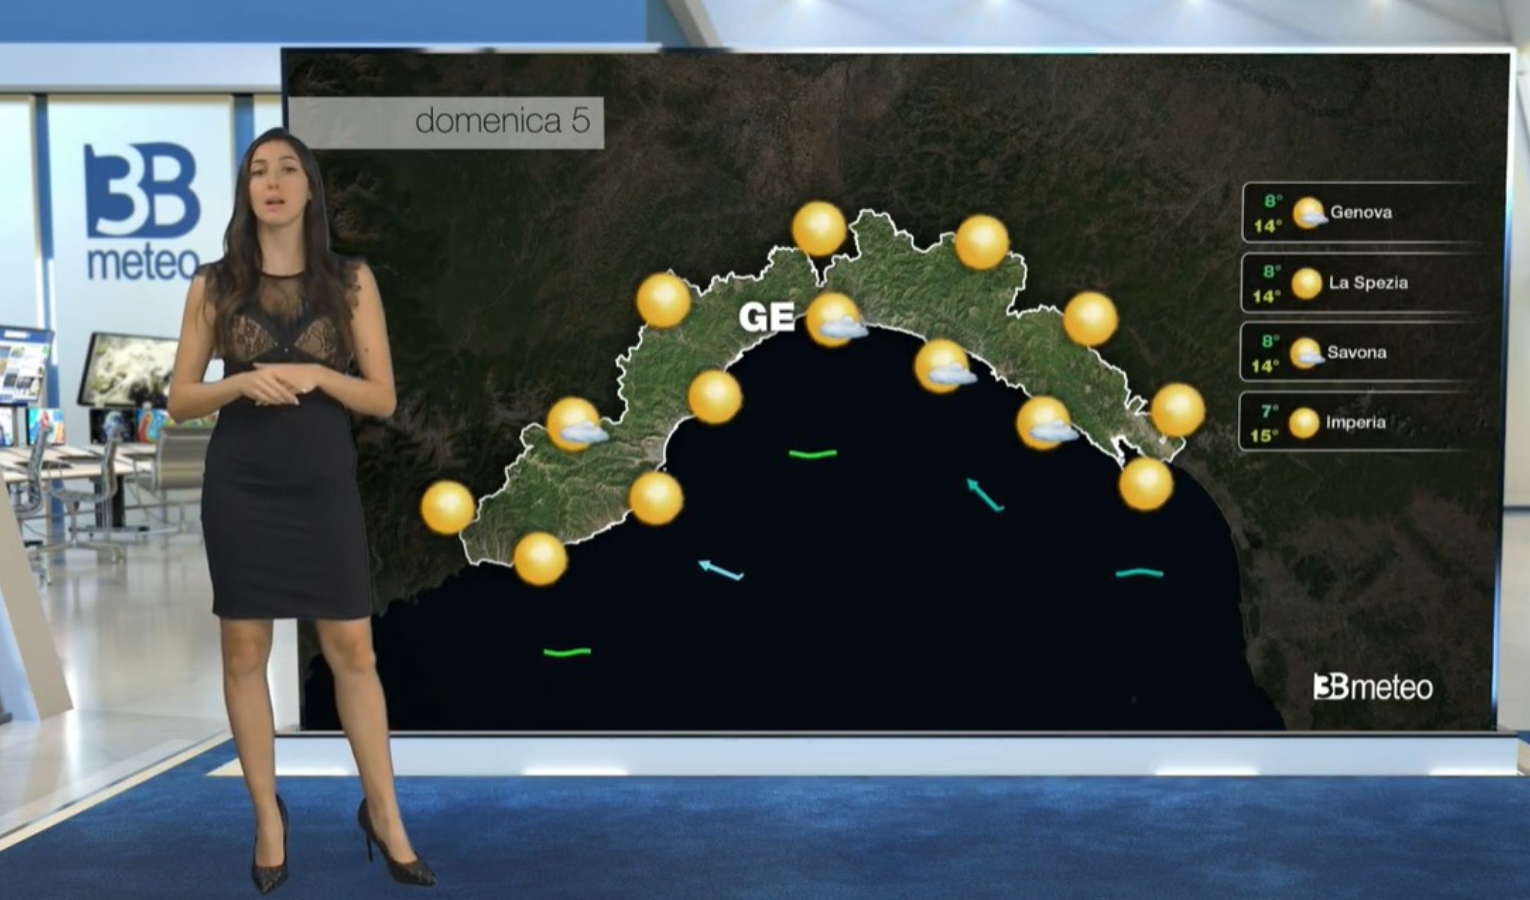 Meteo in Liguria, le previsioni per mercoledì 31 maggio